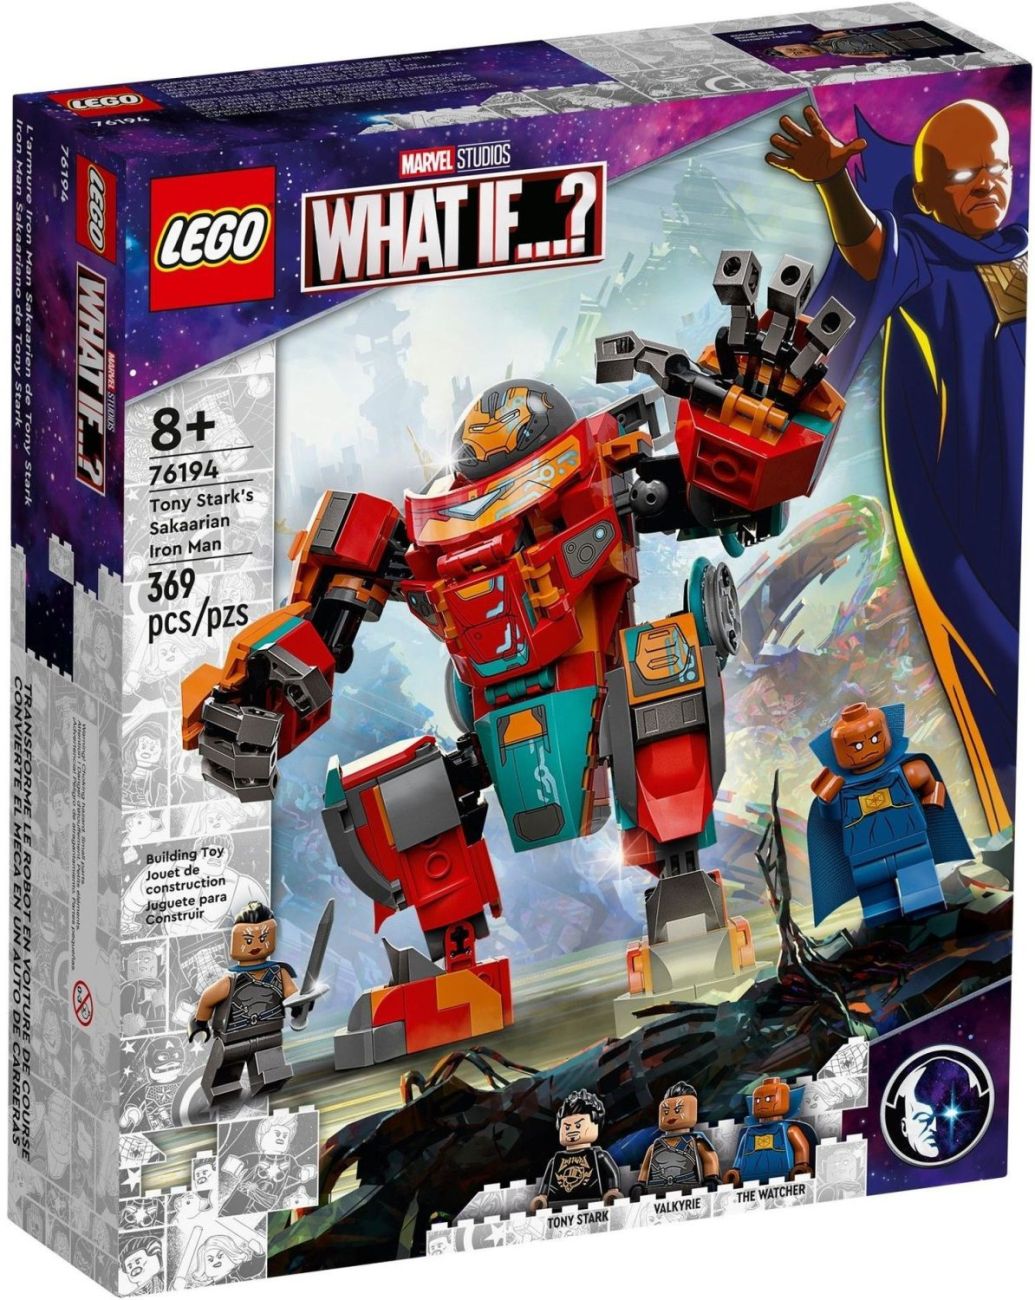 LEGO August 2021 Neuheiten ab sofort verfügbar: Technic, Star Wars, T2 & mehr!